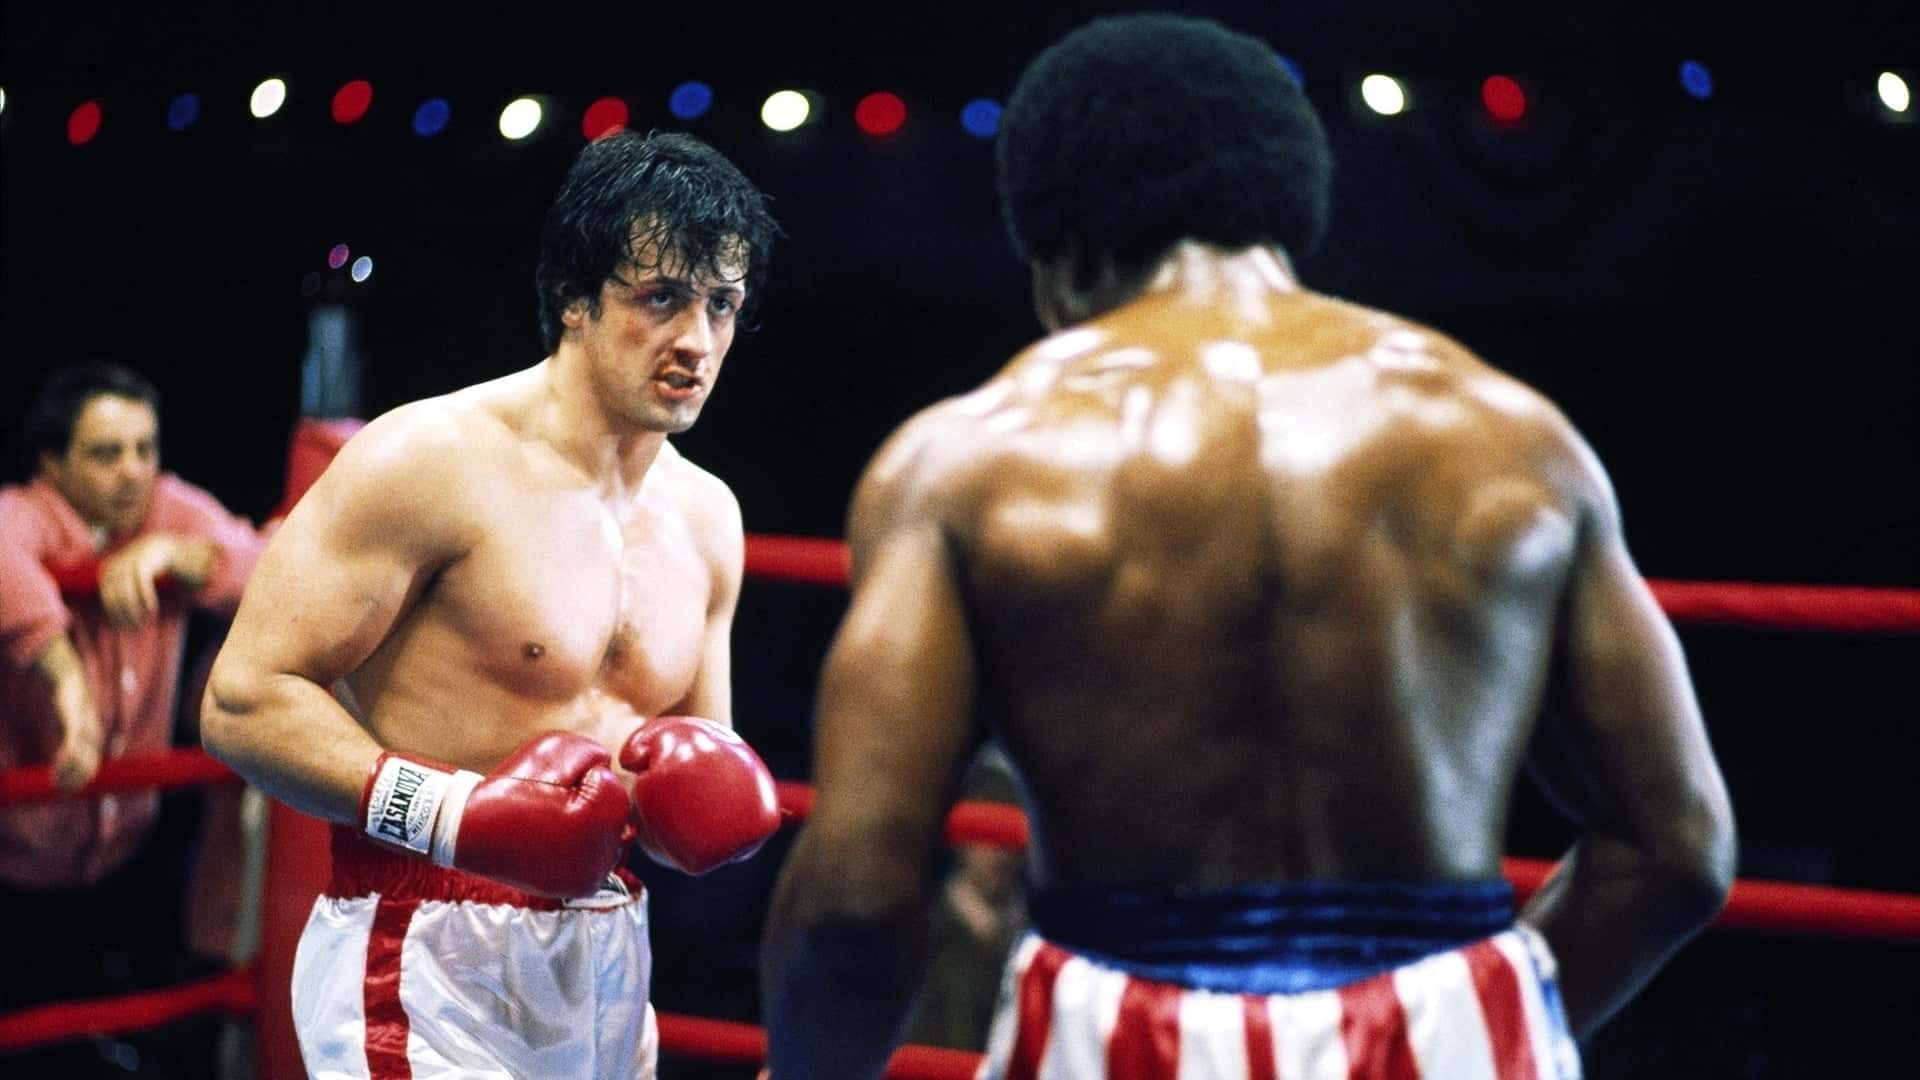 دانلود فیلم Rocky 1976